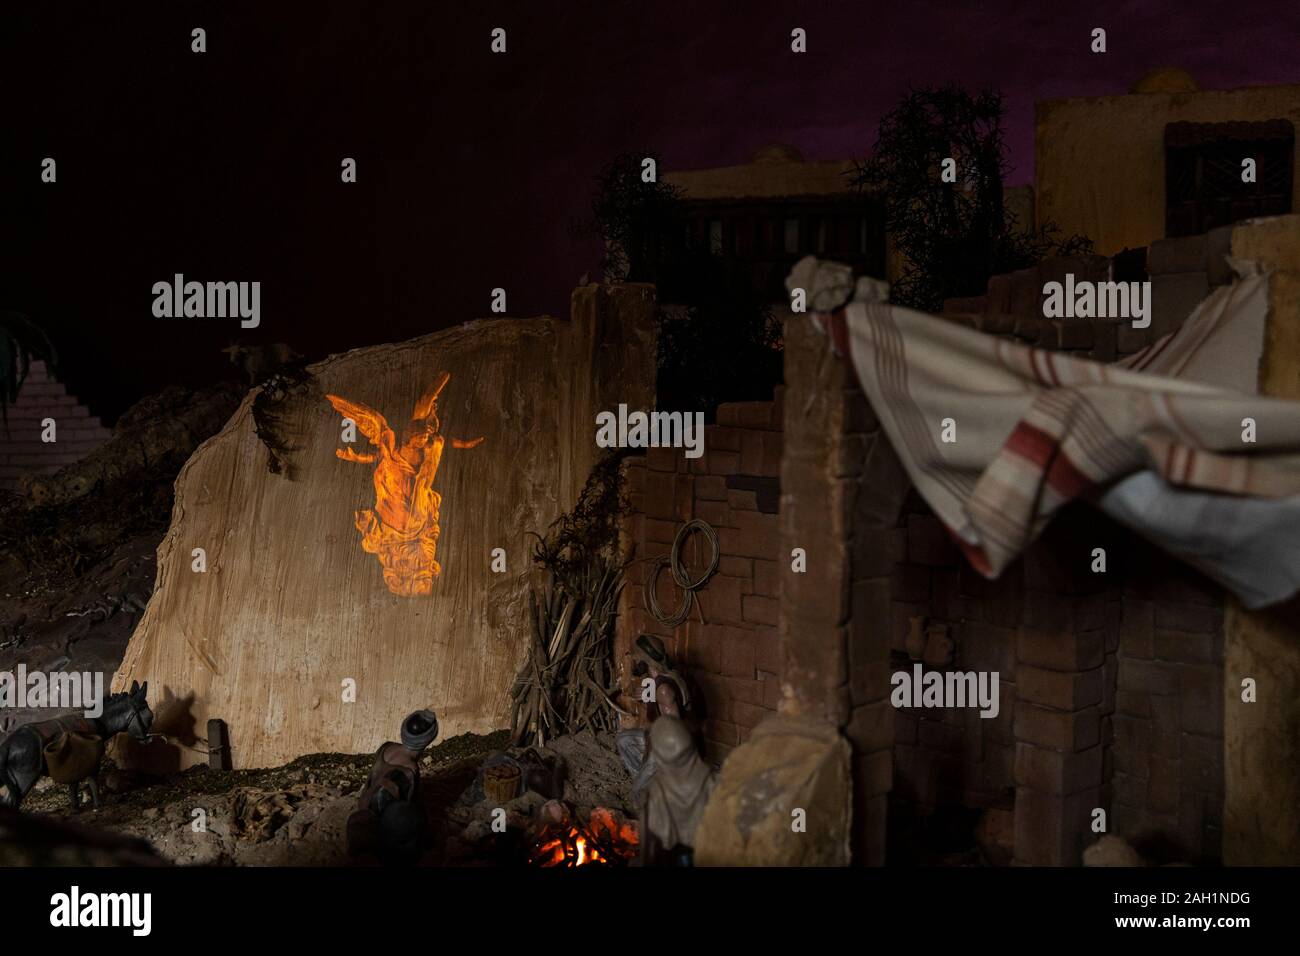 Scena della Natività che mostra il villaggio di Betlemme con dettagli dal racconto della nascita di Gesù Cristo, diorama sul display in San Cristobal de La La Foto Stock